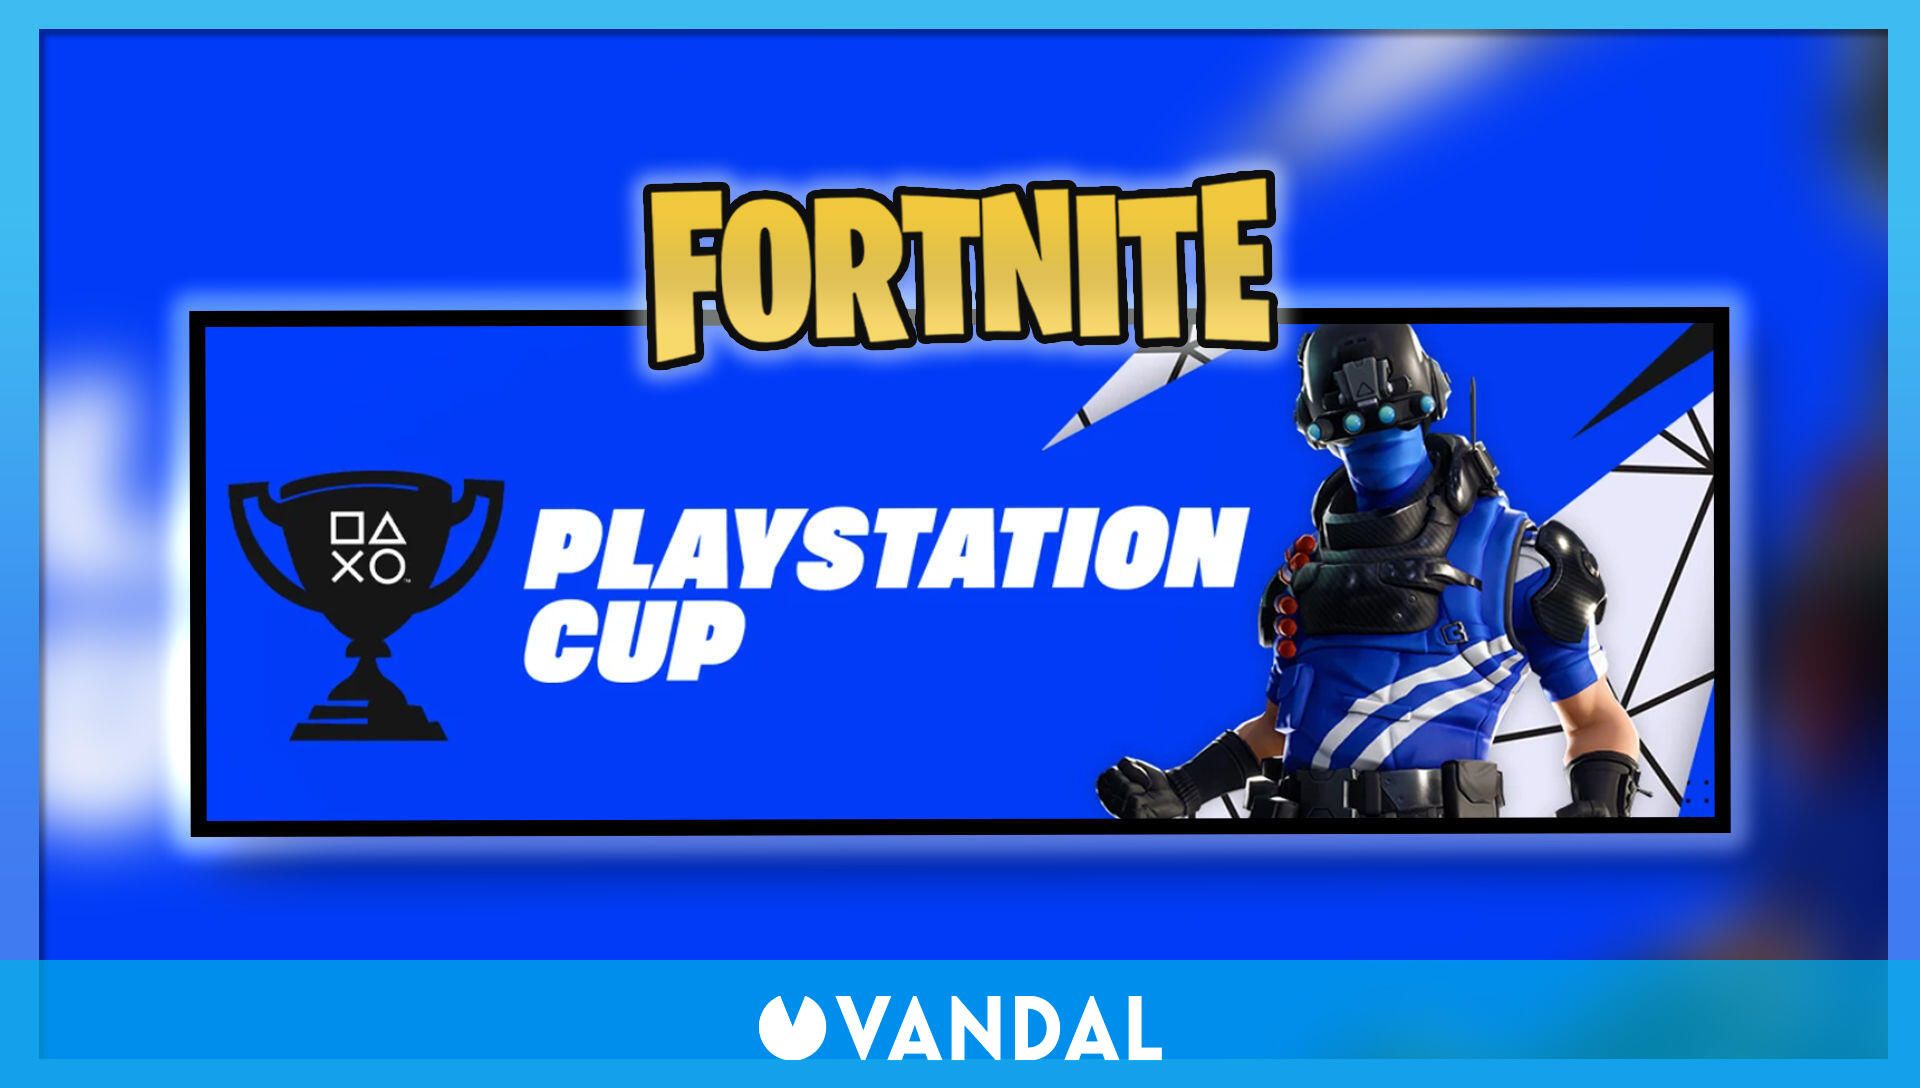 Copa dúos de PlayStation en Fortnite y de marzo): Cómo participar y premios - Vandal